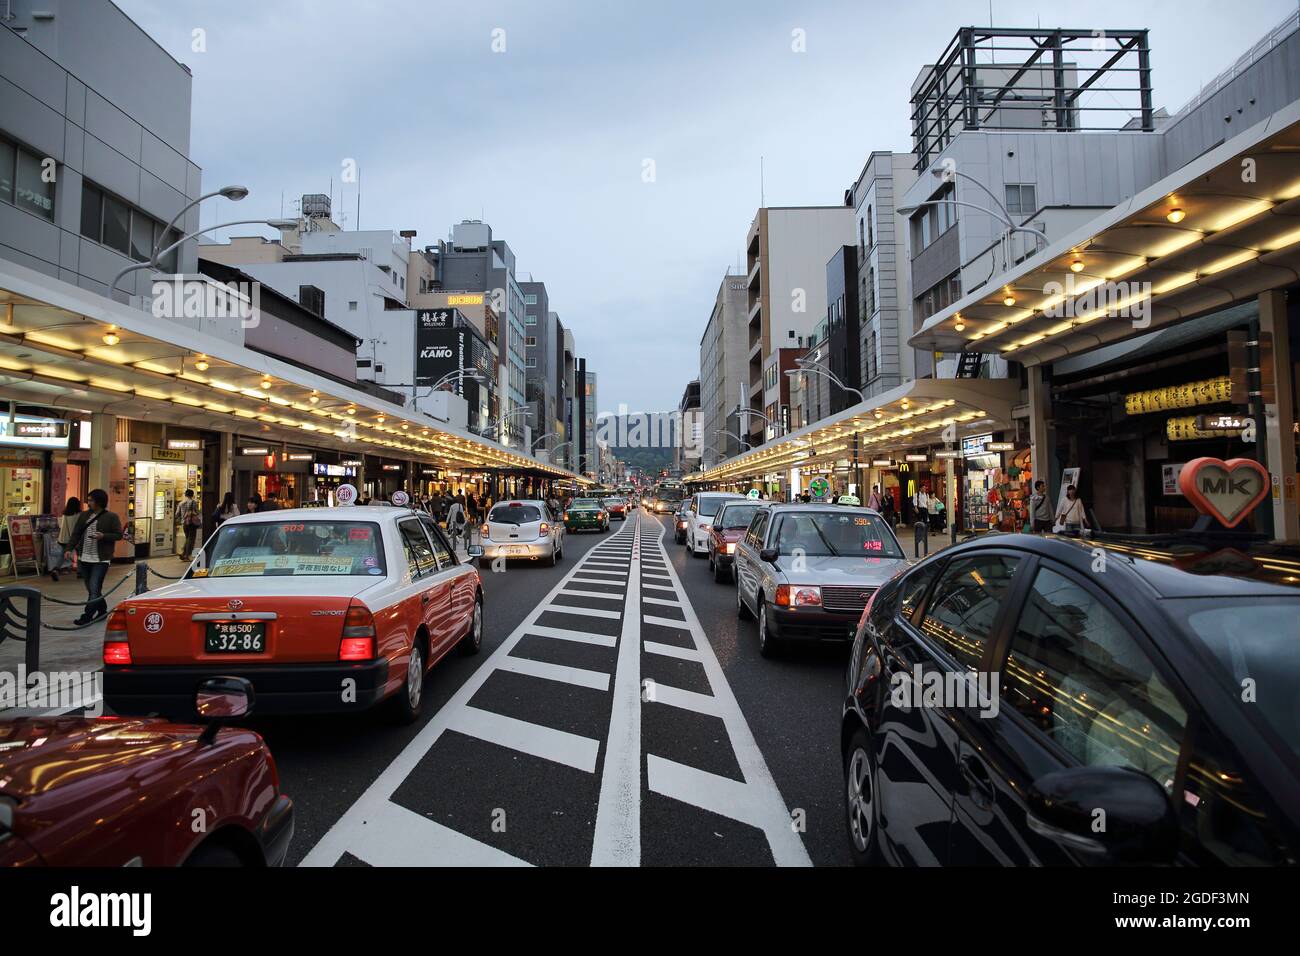 KYOTO, GIAPPONE - 4 giugno 2016: La gente cammina nella via del centro di Kyoto, Giappone. Foto Stock